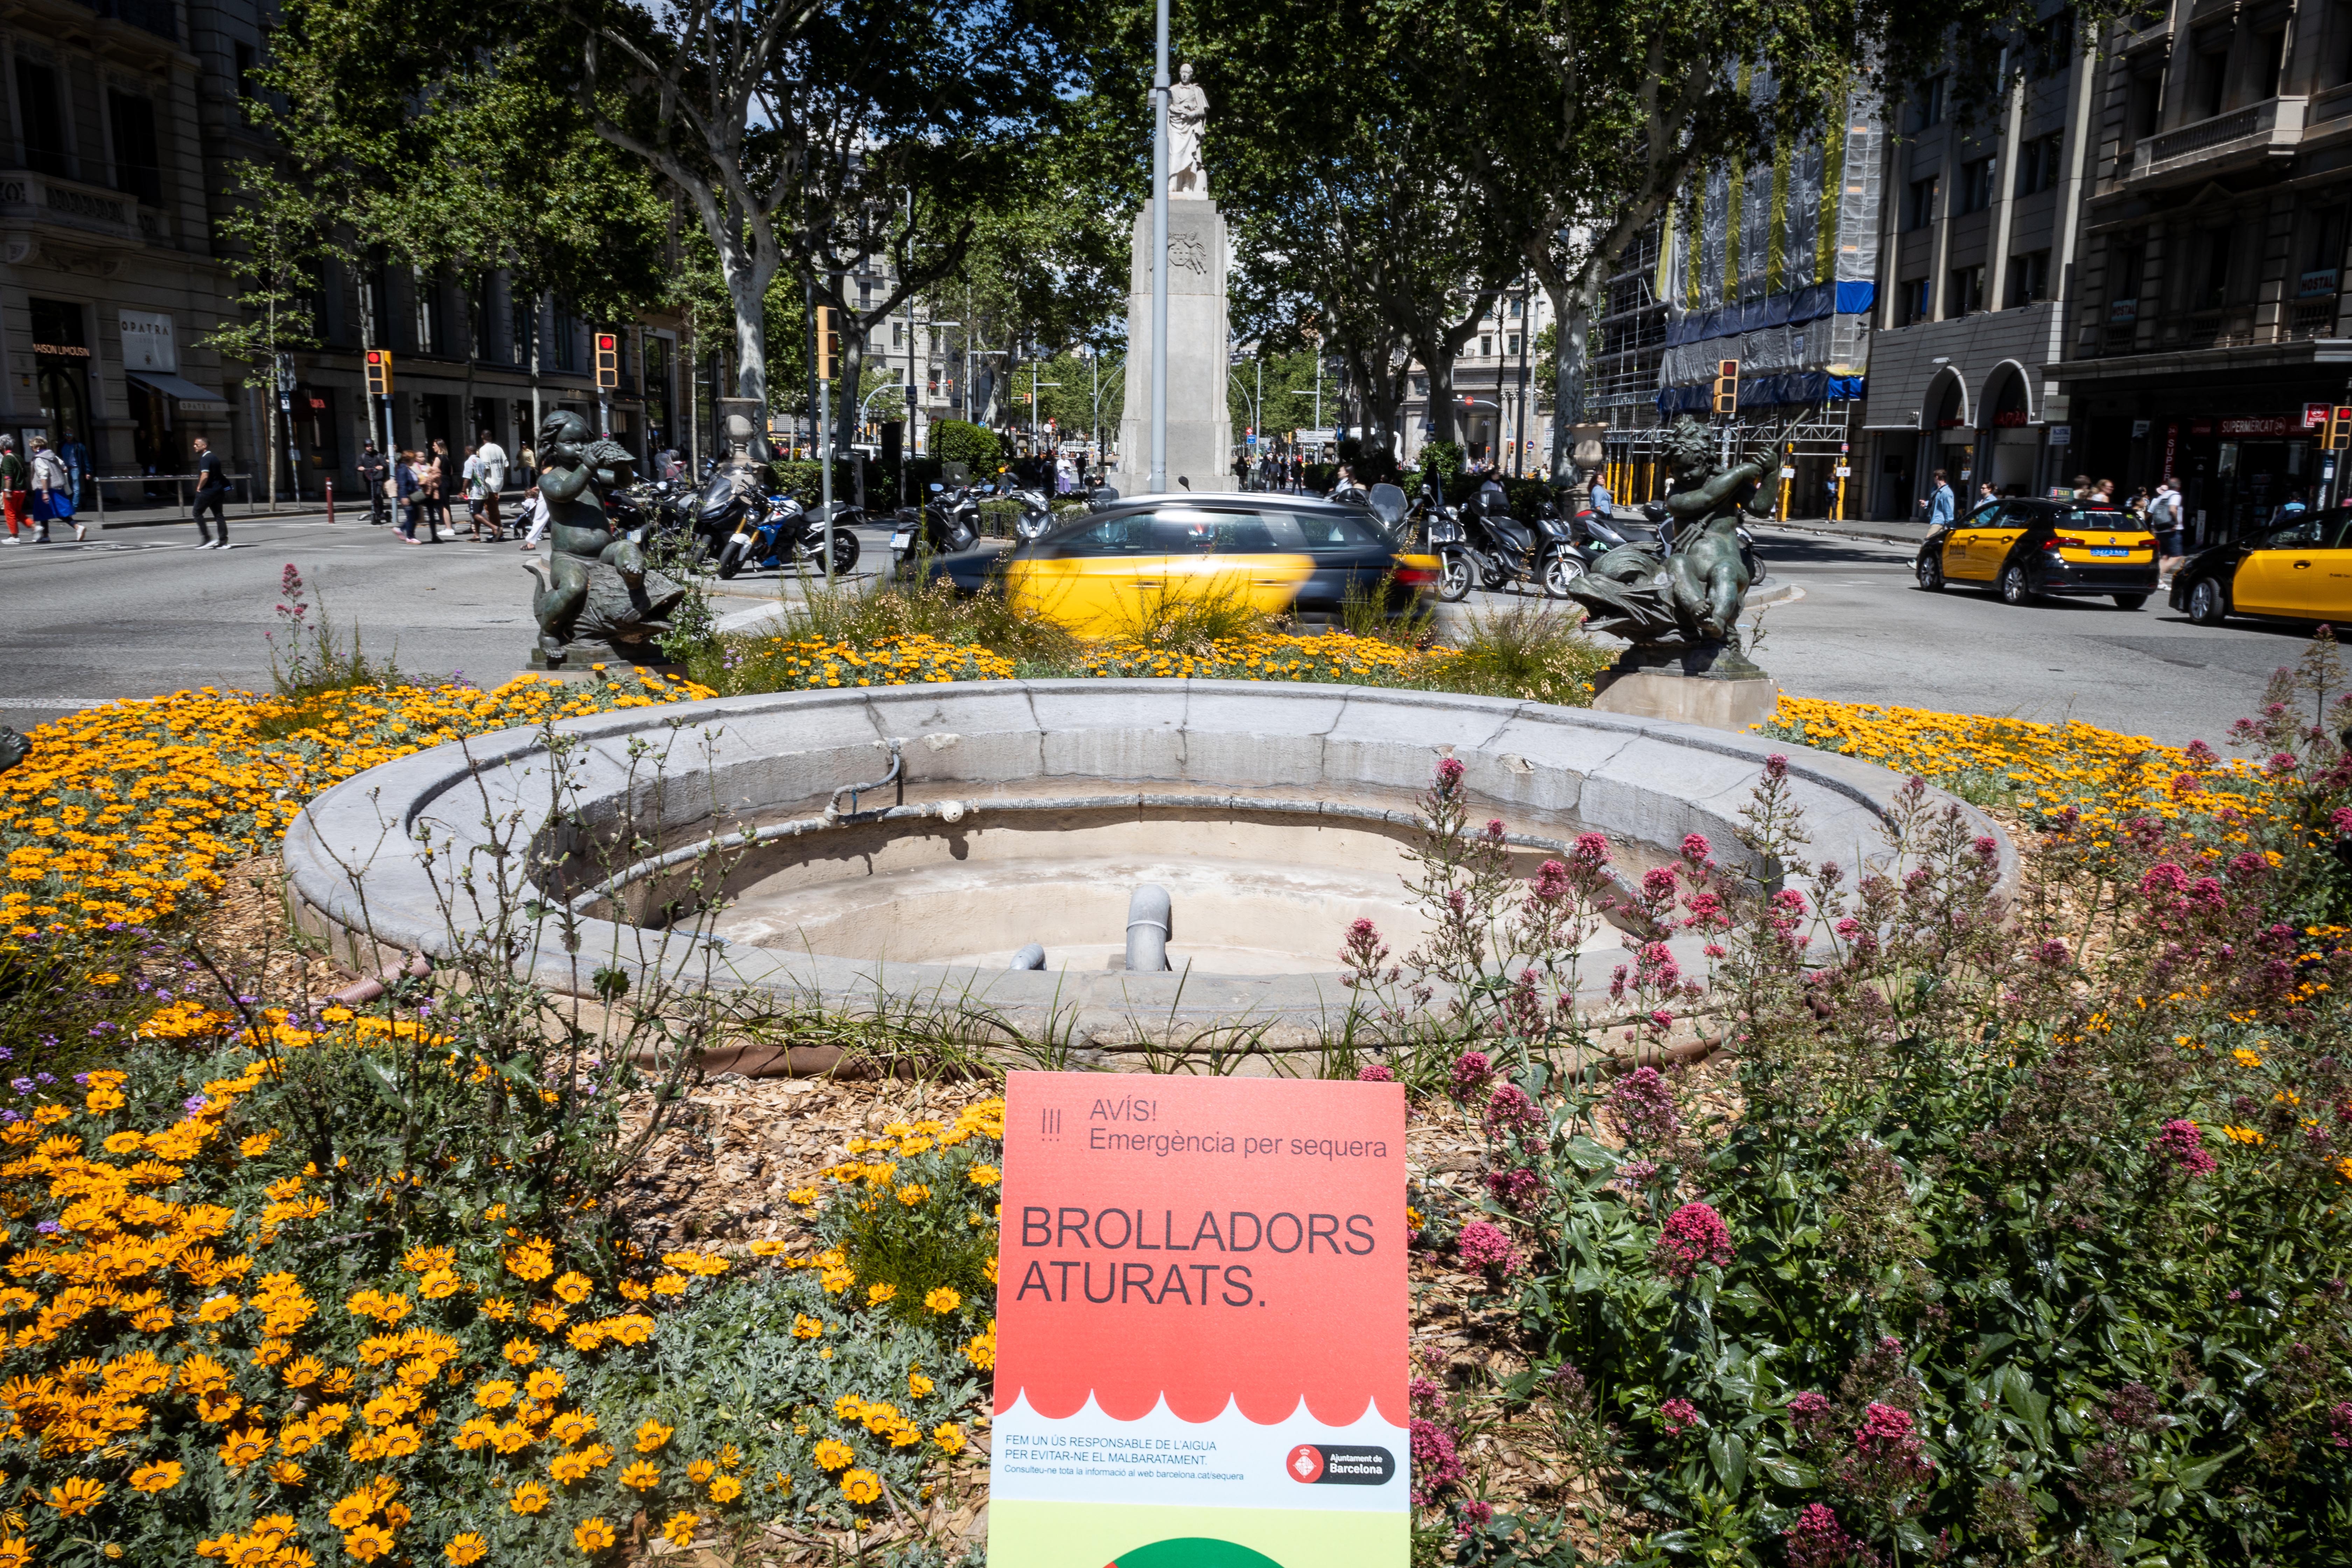 Un brollador de Barcelona aturat per les restriccions per la sequera